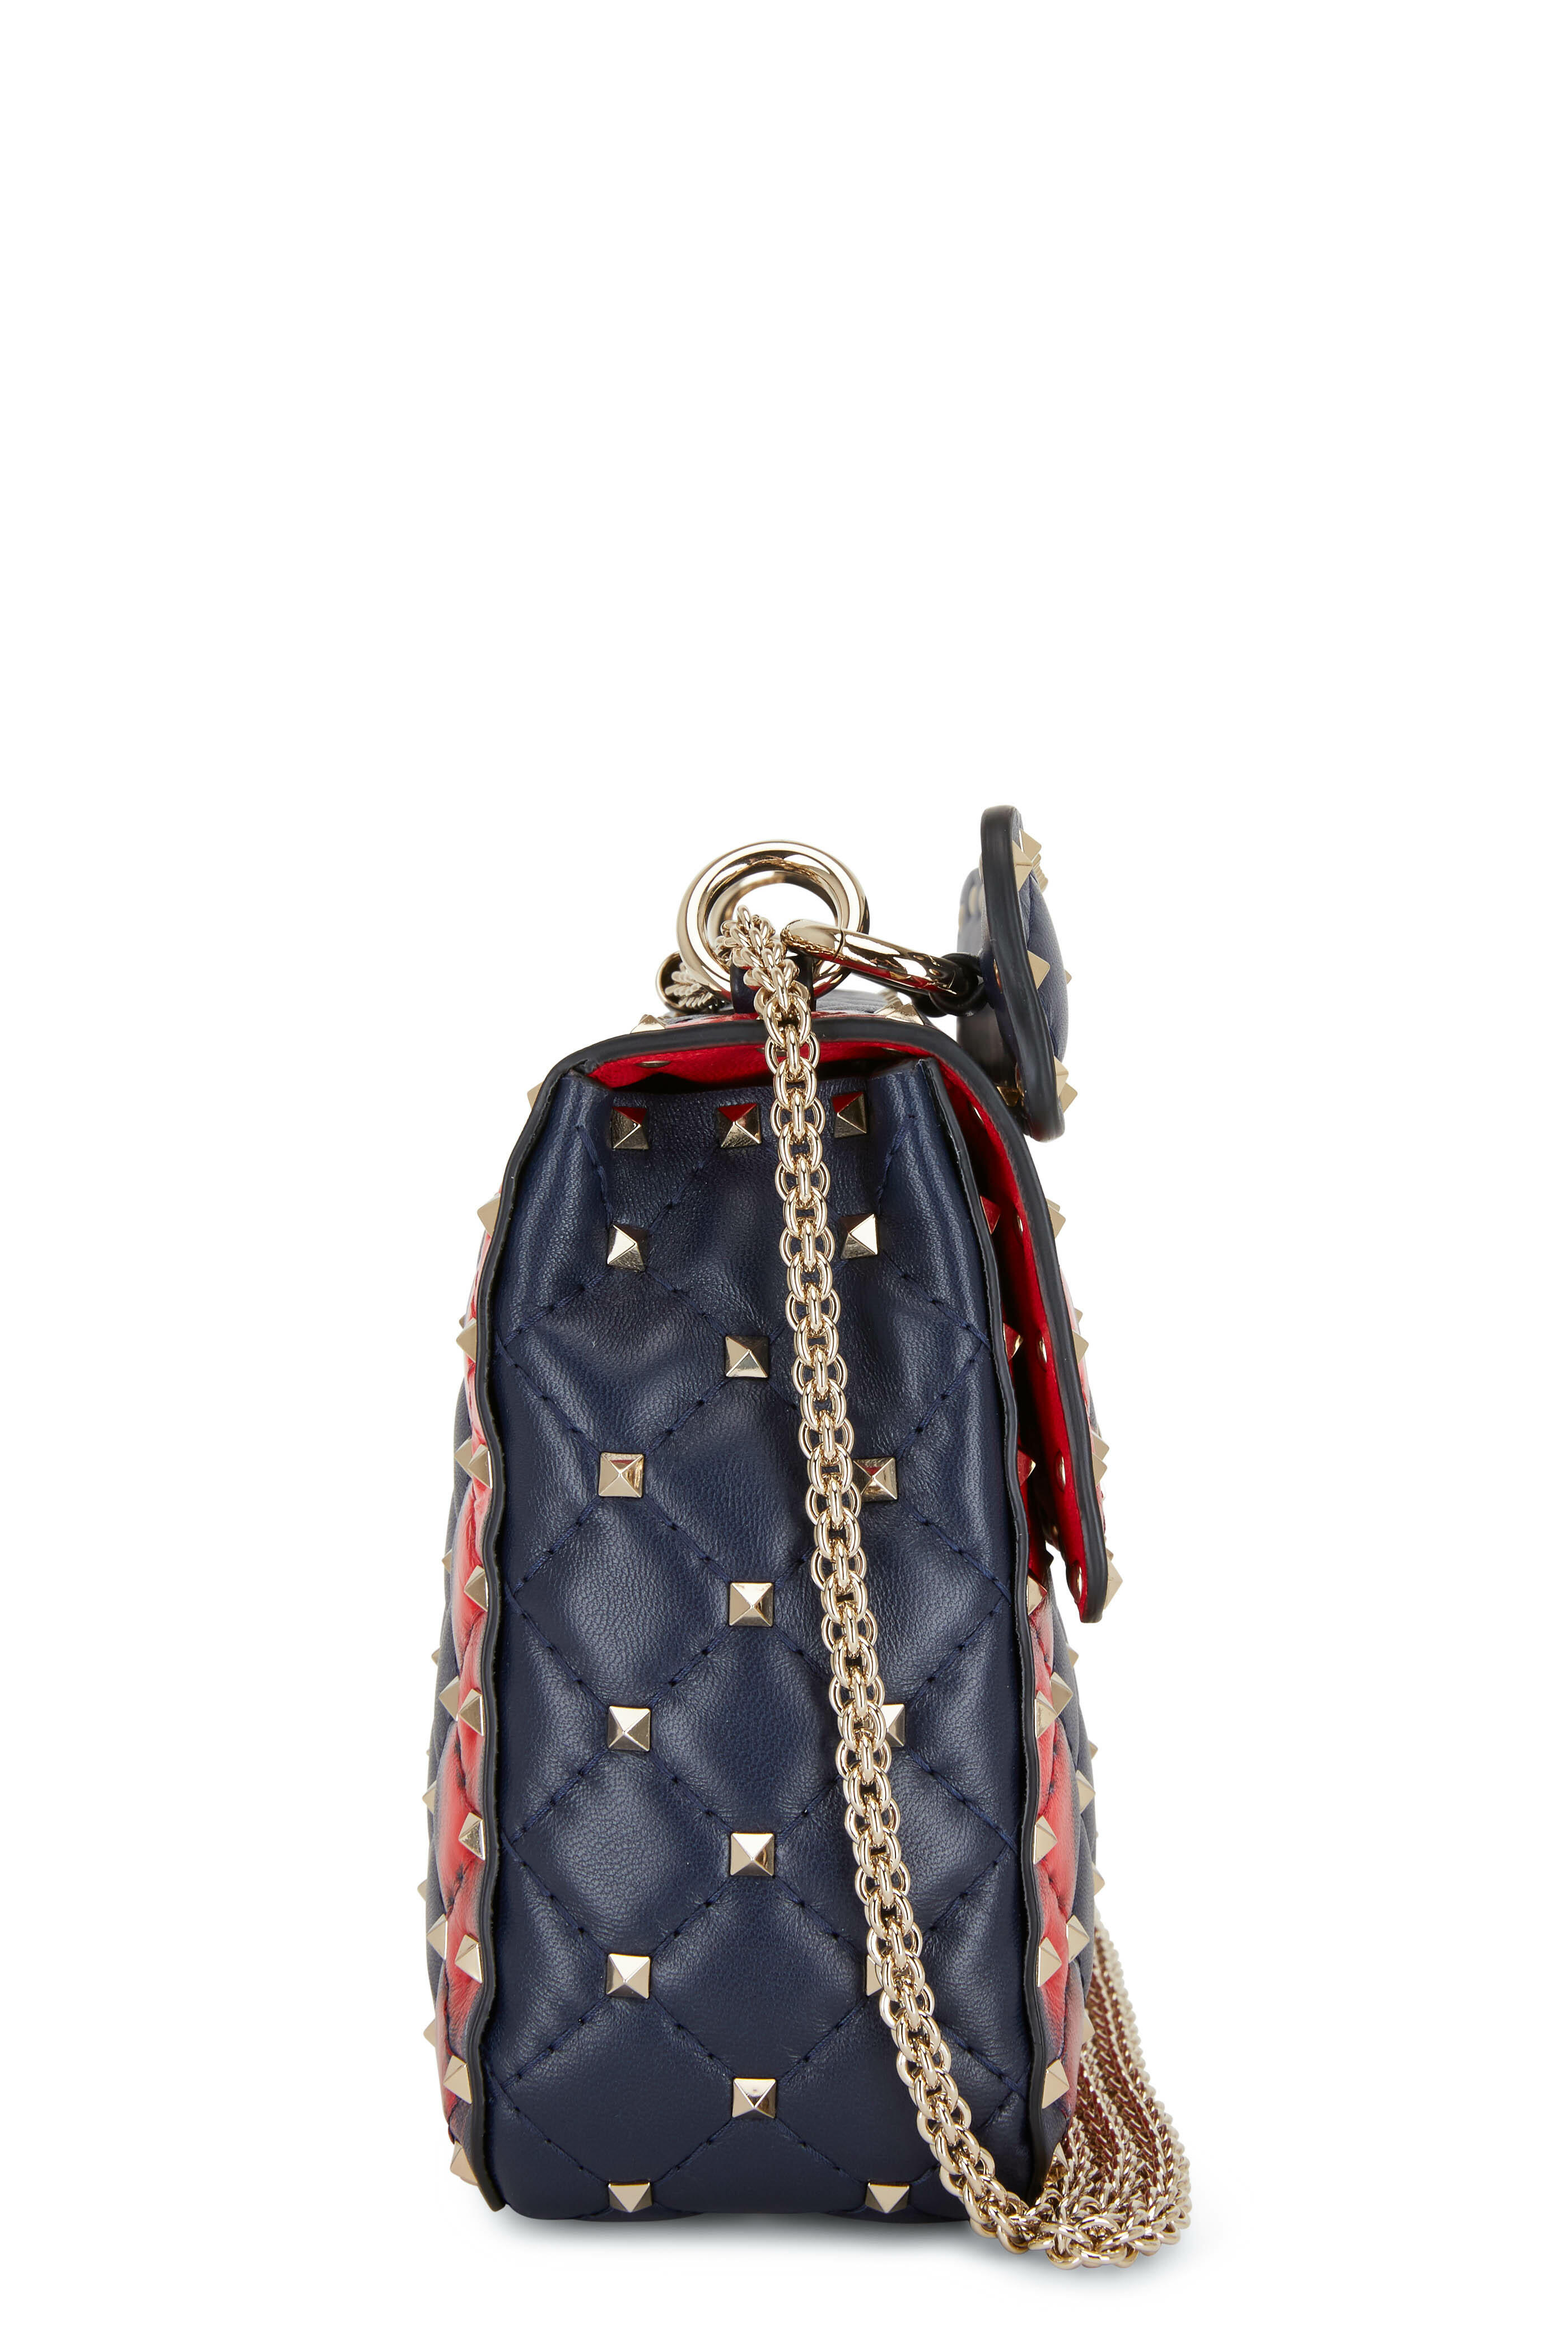 Valentino Garavani Rockstud Spike Shoulder Bag In Red